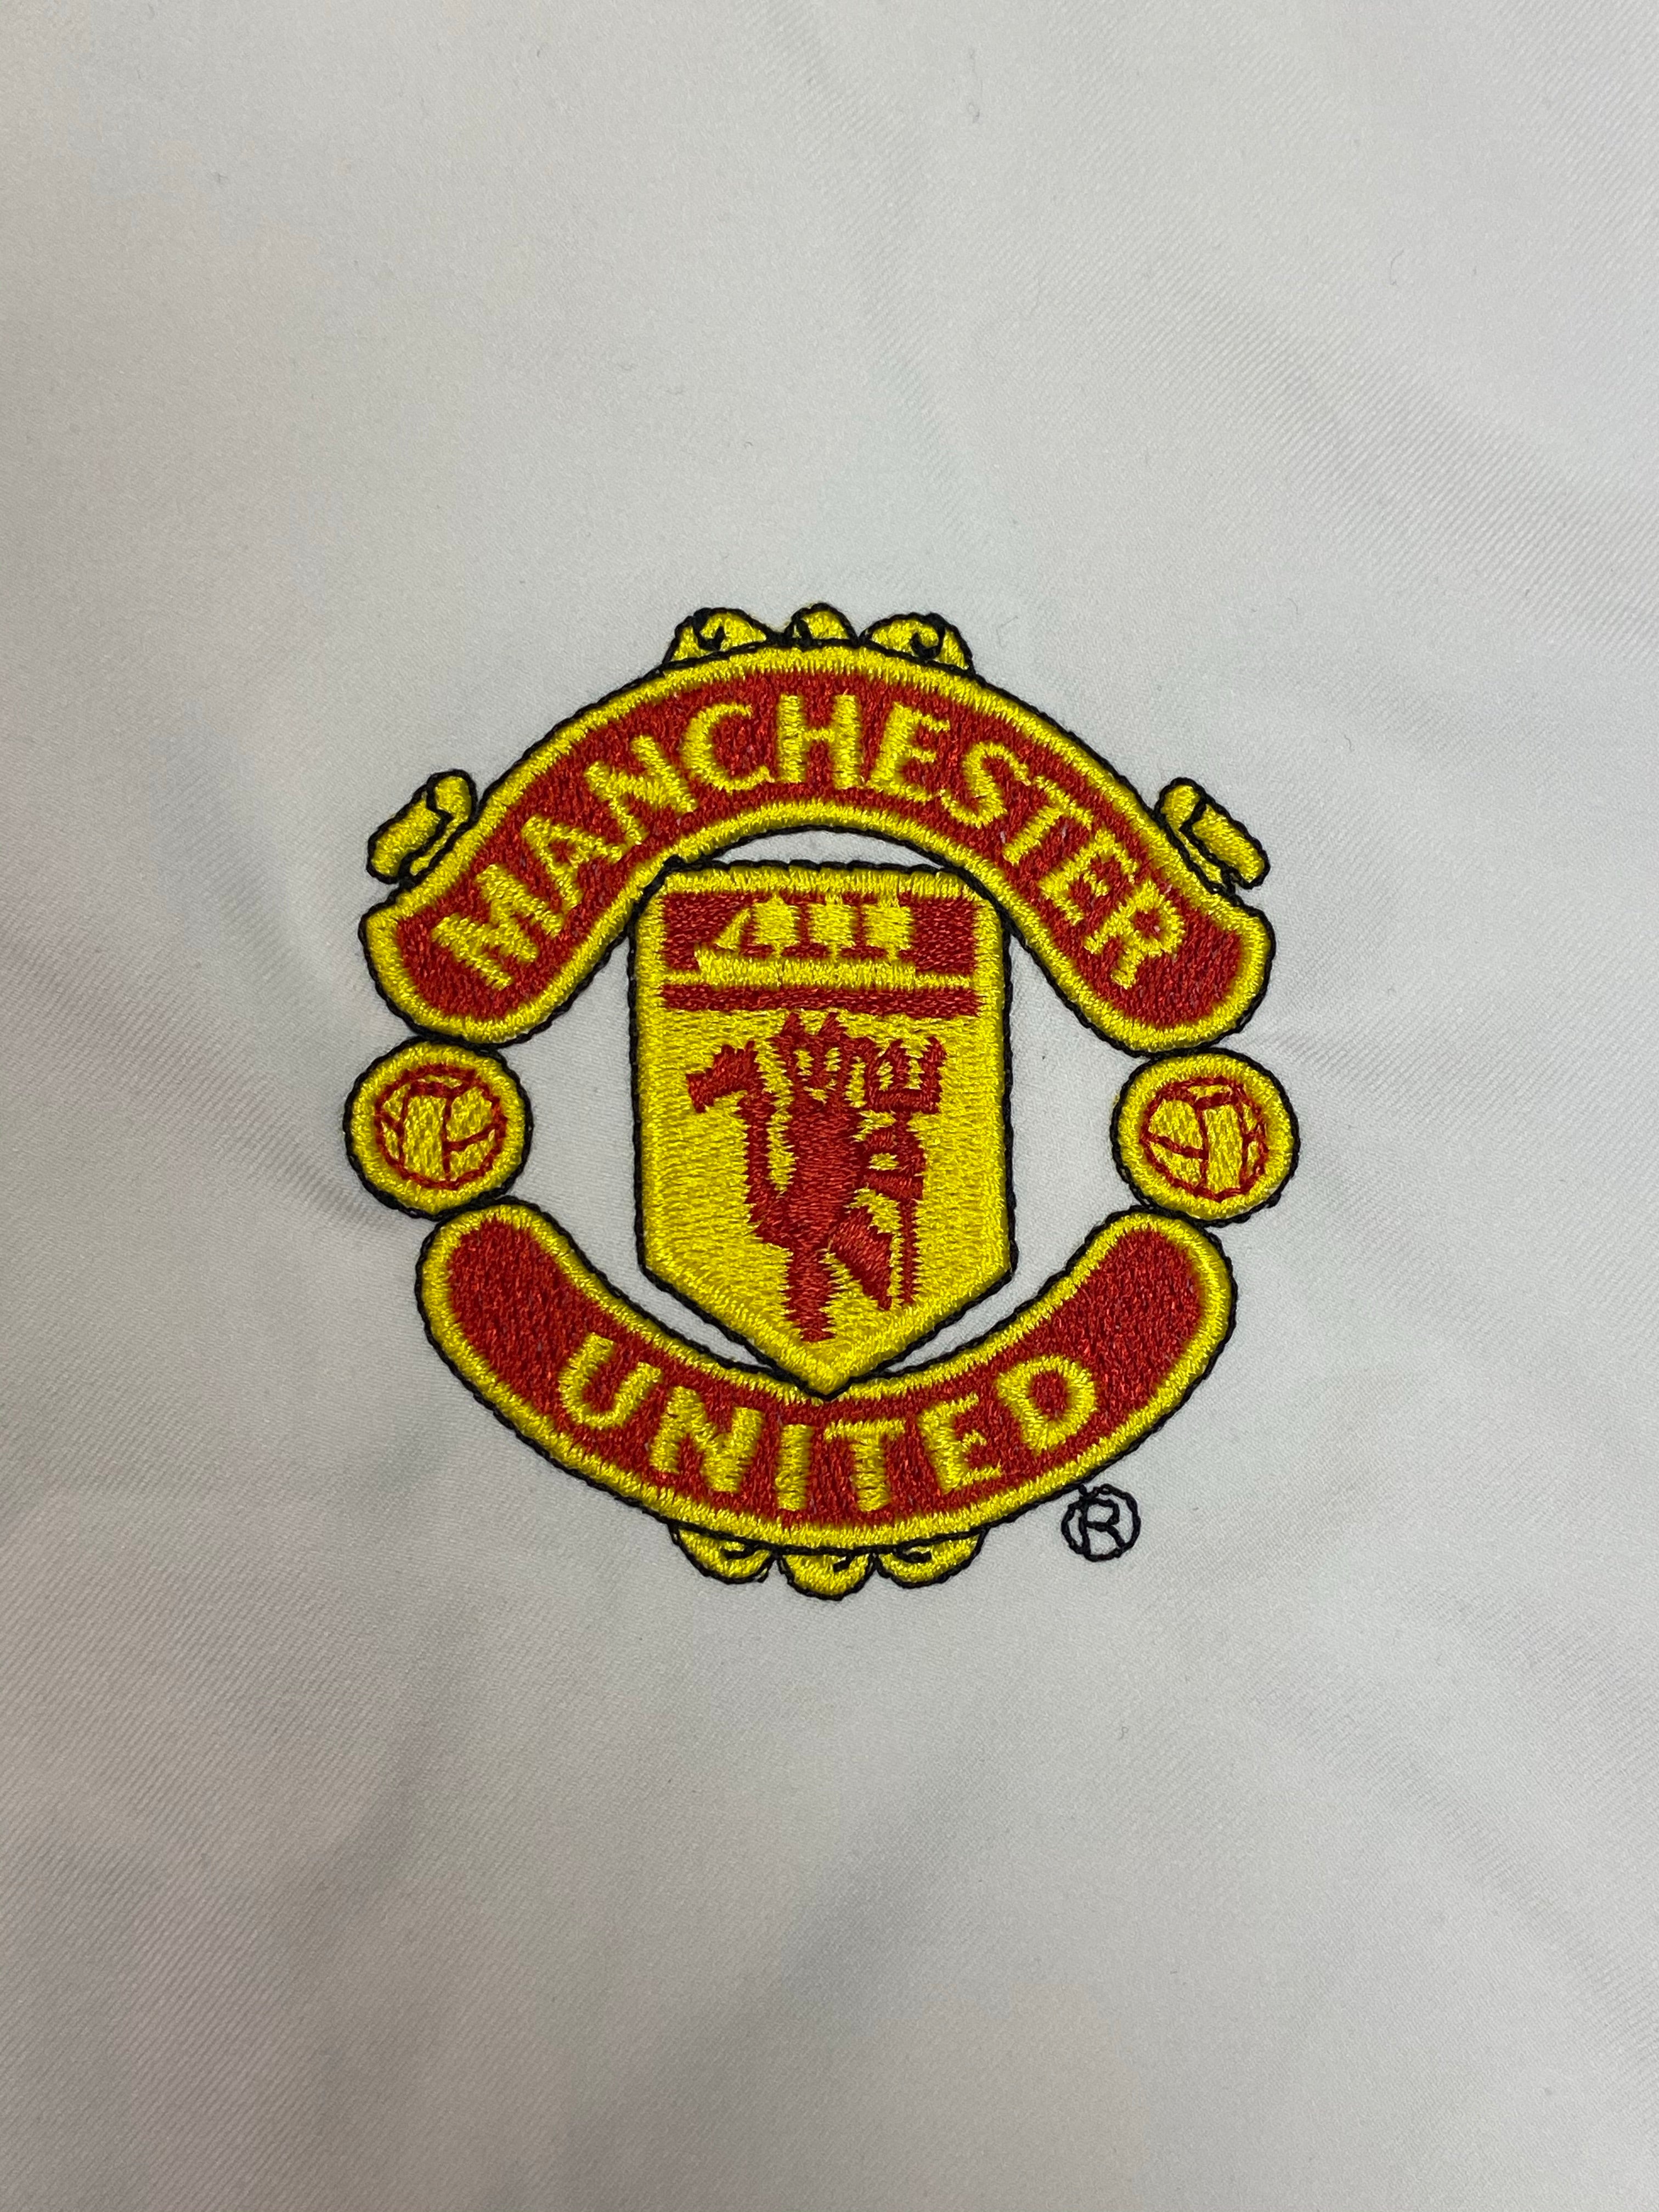 2002/03 Manchester United Away Shirt (XL) 8.5/10